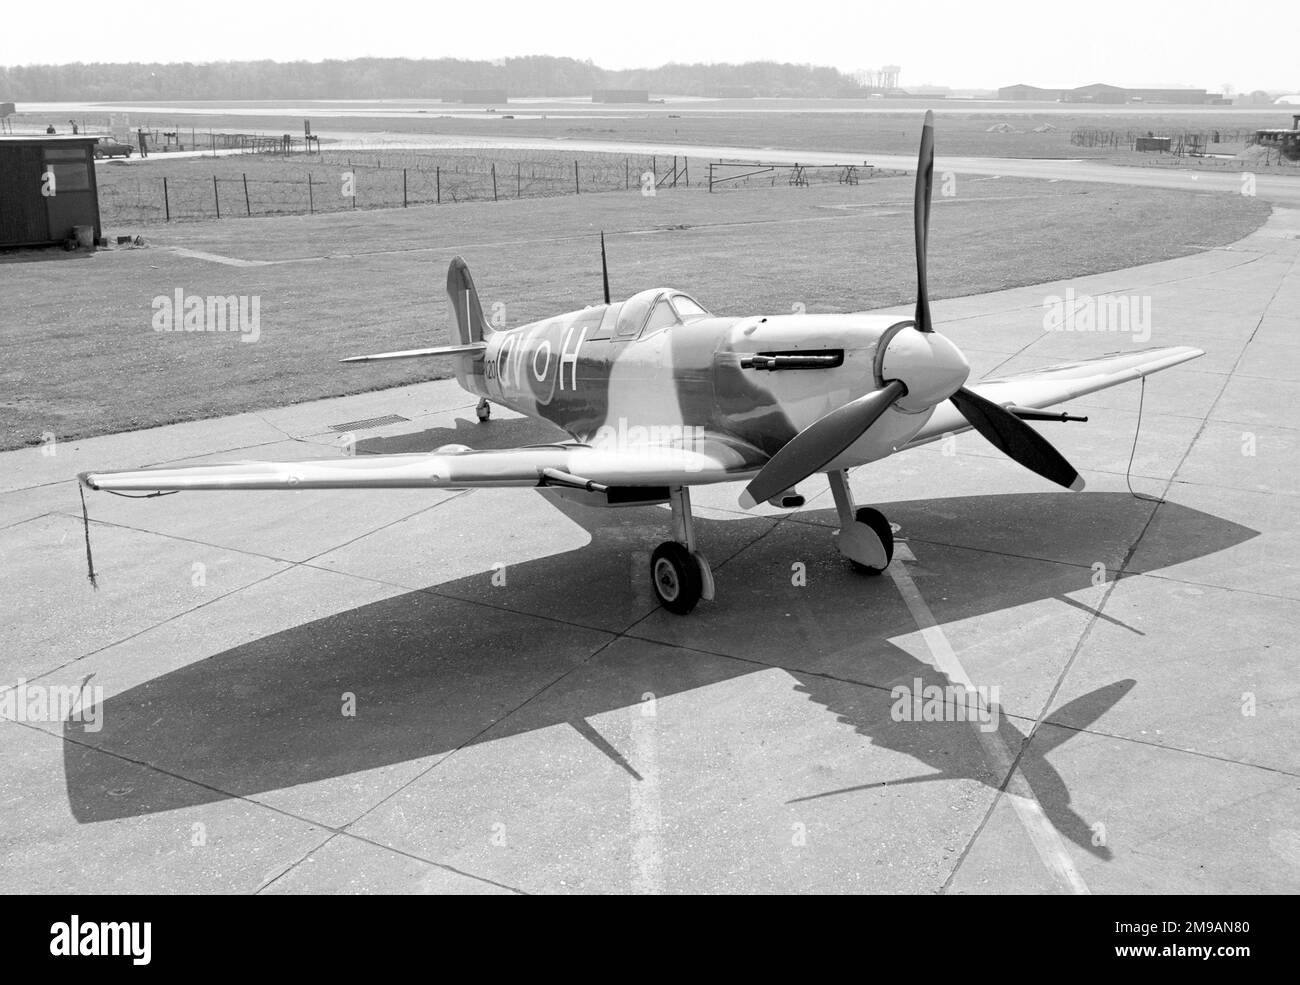 Supermarine Spitfire LF Mk.VB 8070M / (EP120), bei RAF Wattisham als Torwächter / Stationsmaskottchen. Derzeit (2021) im Besitz der Fighter Collection mit Sitz in Duxford. Erbaut in Castle Bromwich im Jahr 1942 und geliefert an die 501. Staffel, wo es sechs Tote bekam, während er von Sqn LDR Geoffrey Northcott geflogen wurde. Es erlitt einen Bodenunfall und wurde von CB repariert, bevor es zur 19. Staffel kam. EP120 wurde 1944 an das 402. Geschwader geliefert und erhielt die Codes AE-A. Nach dem Krieg wurde es zum Torwächter und später zu einem Star im Film „Battle of Britain“, bevor es 1989 eingelagert wurde. Durch den Kampf erworben Stockfoto